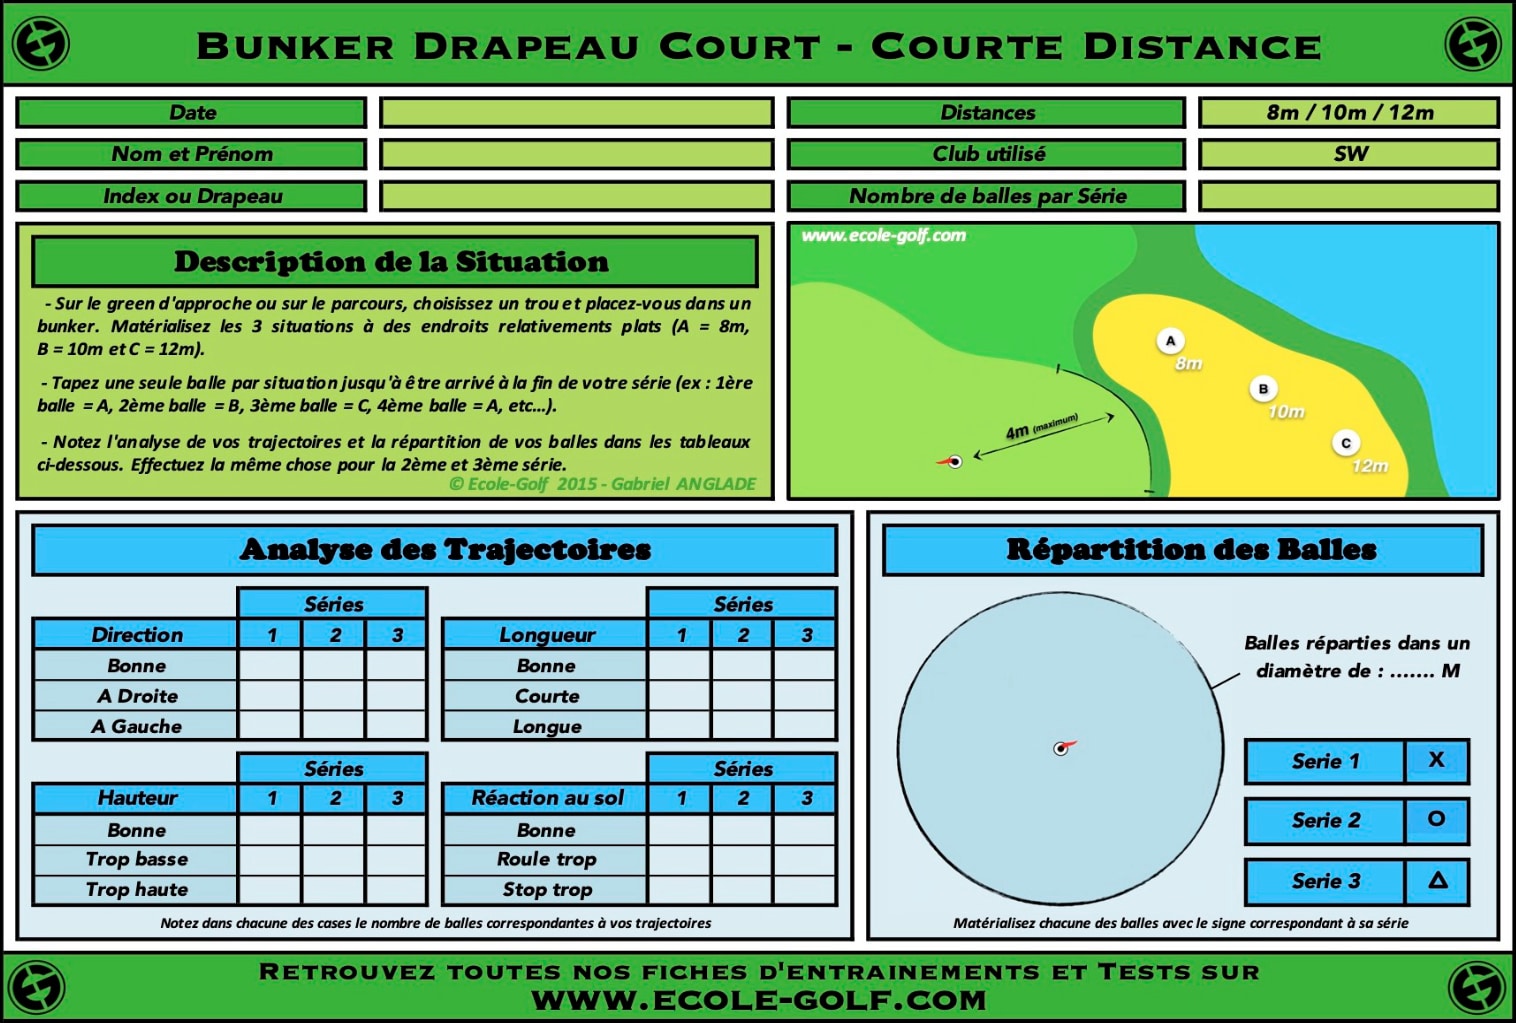 Bunker Drapeau Court - Courte Distance